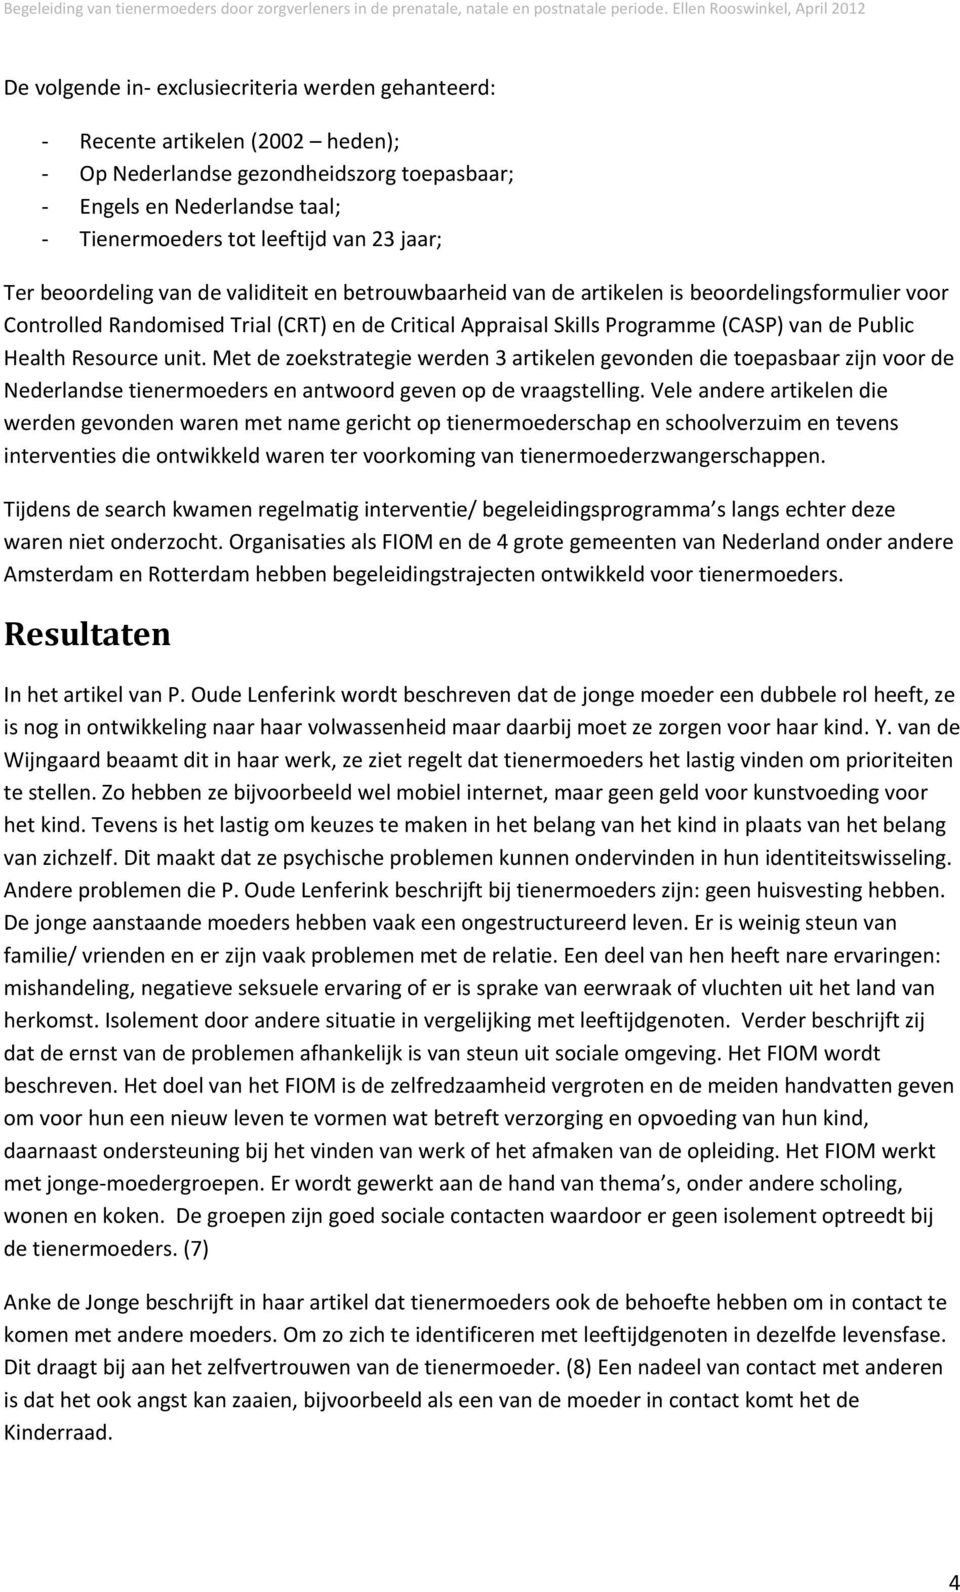 Public Health Resource unit. Met de zoekstrategie werden 3 artikelen gevonden die toepasbaar zijn voor de Nederlandse tienermoeders en antwoord geven op de vraagstelling.